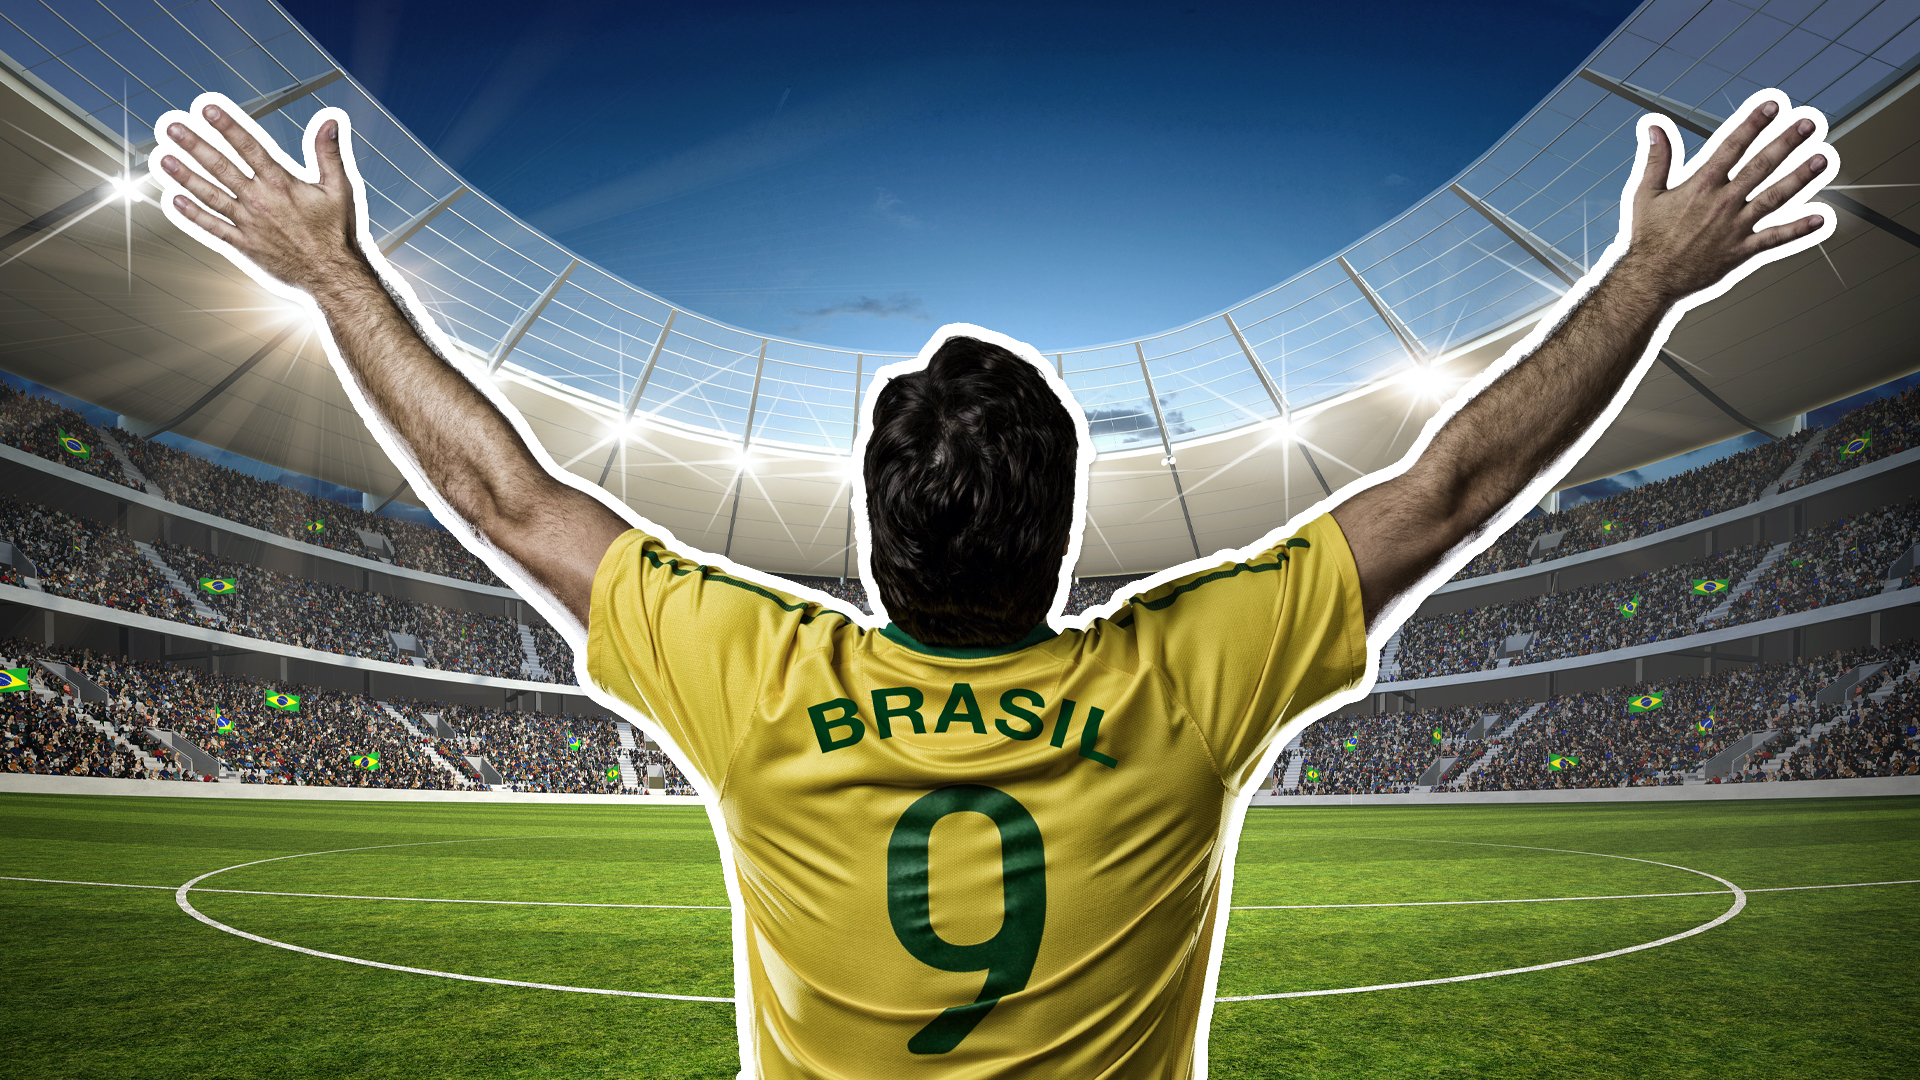 A football fan with a Brazil shirt